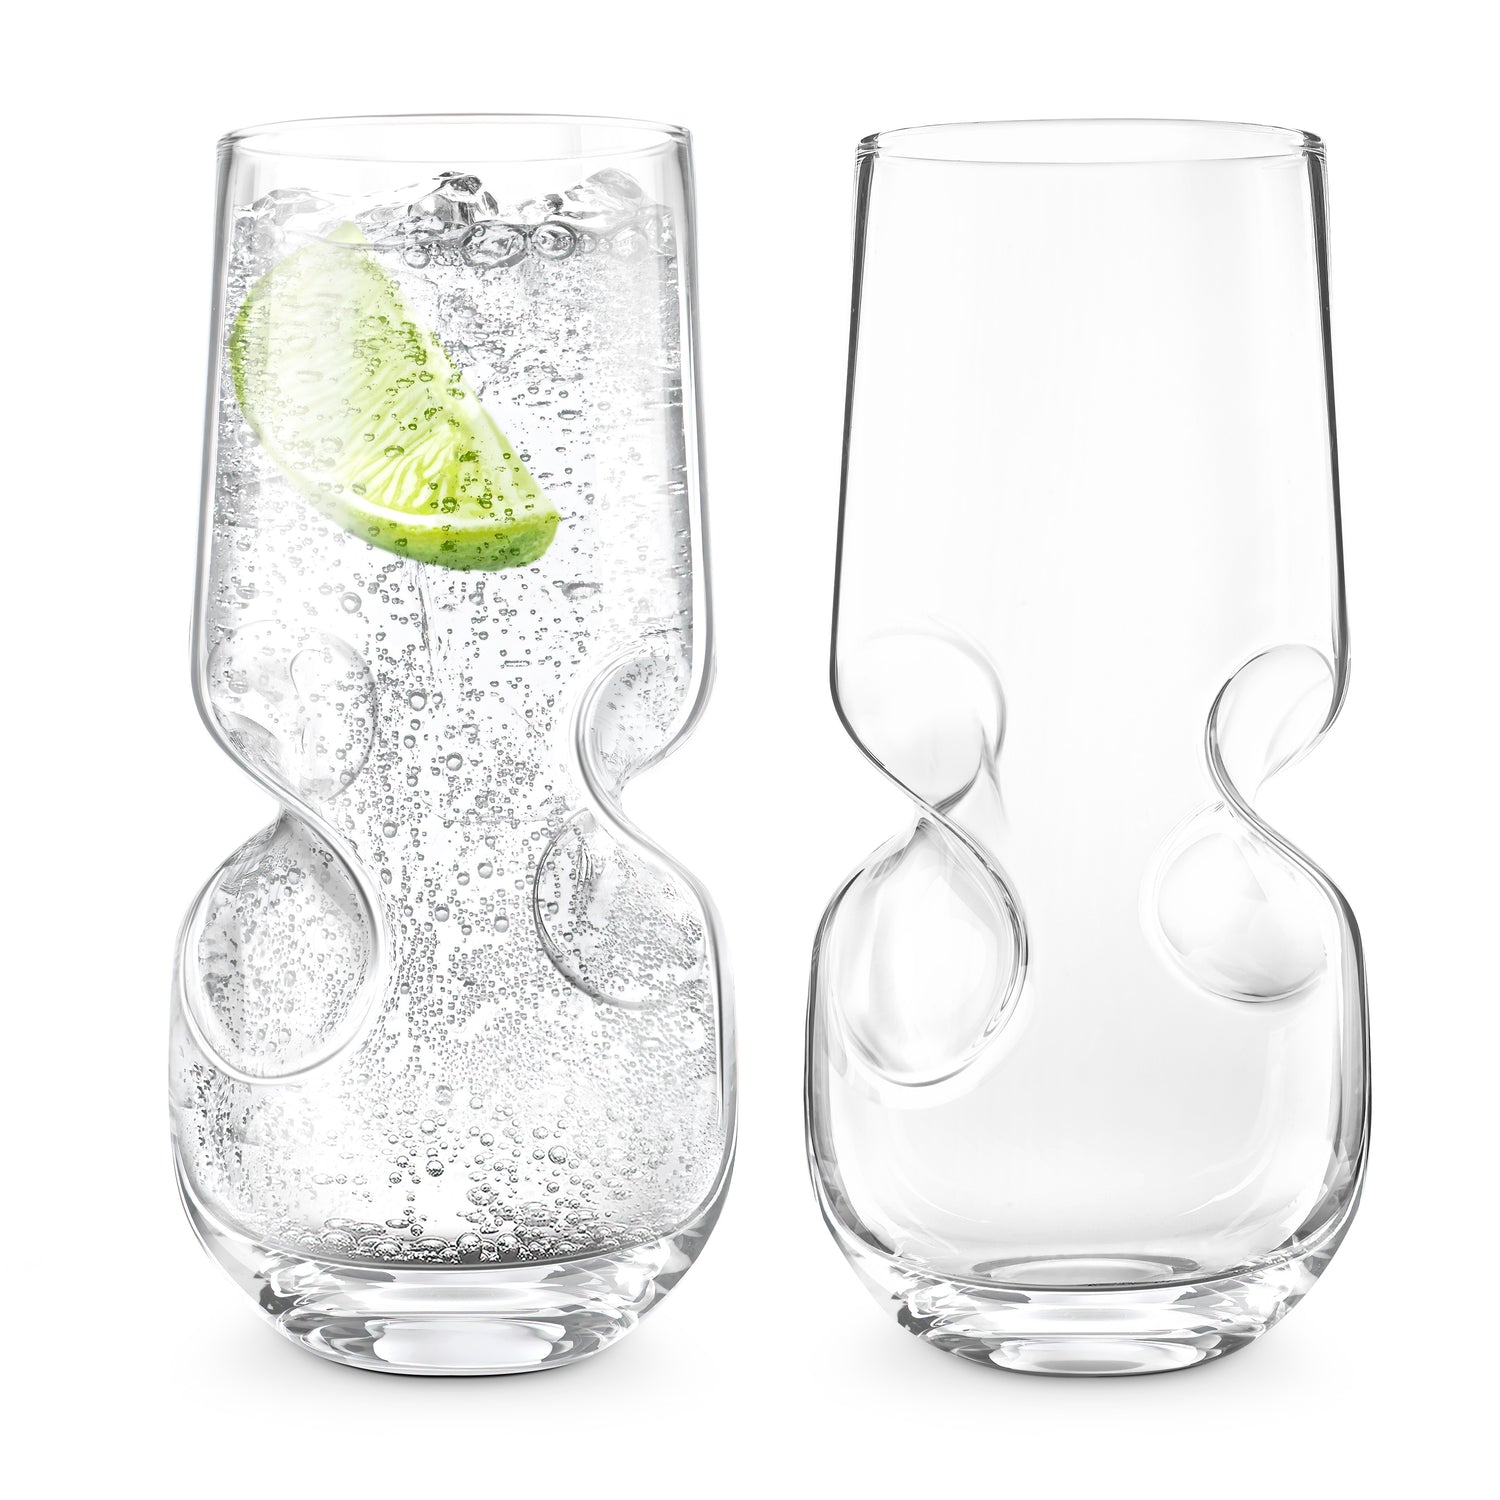 Bubbles Seltzer / Bubbly Beverage Glasses - Set of 2 - 17 oz (500 ml)